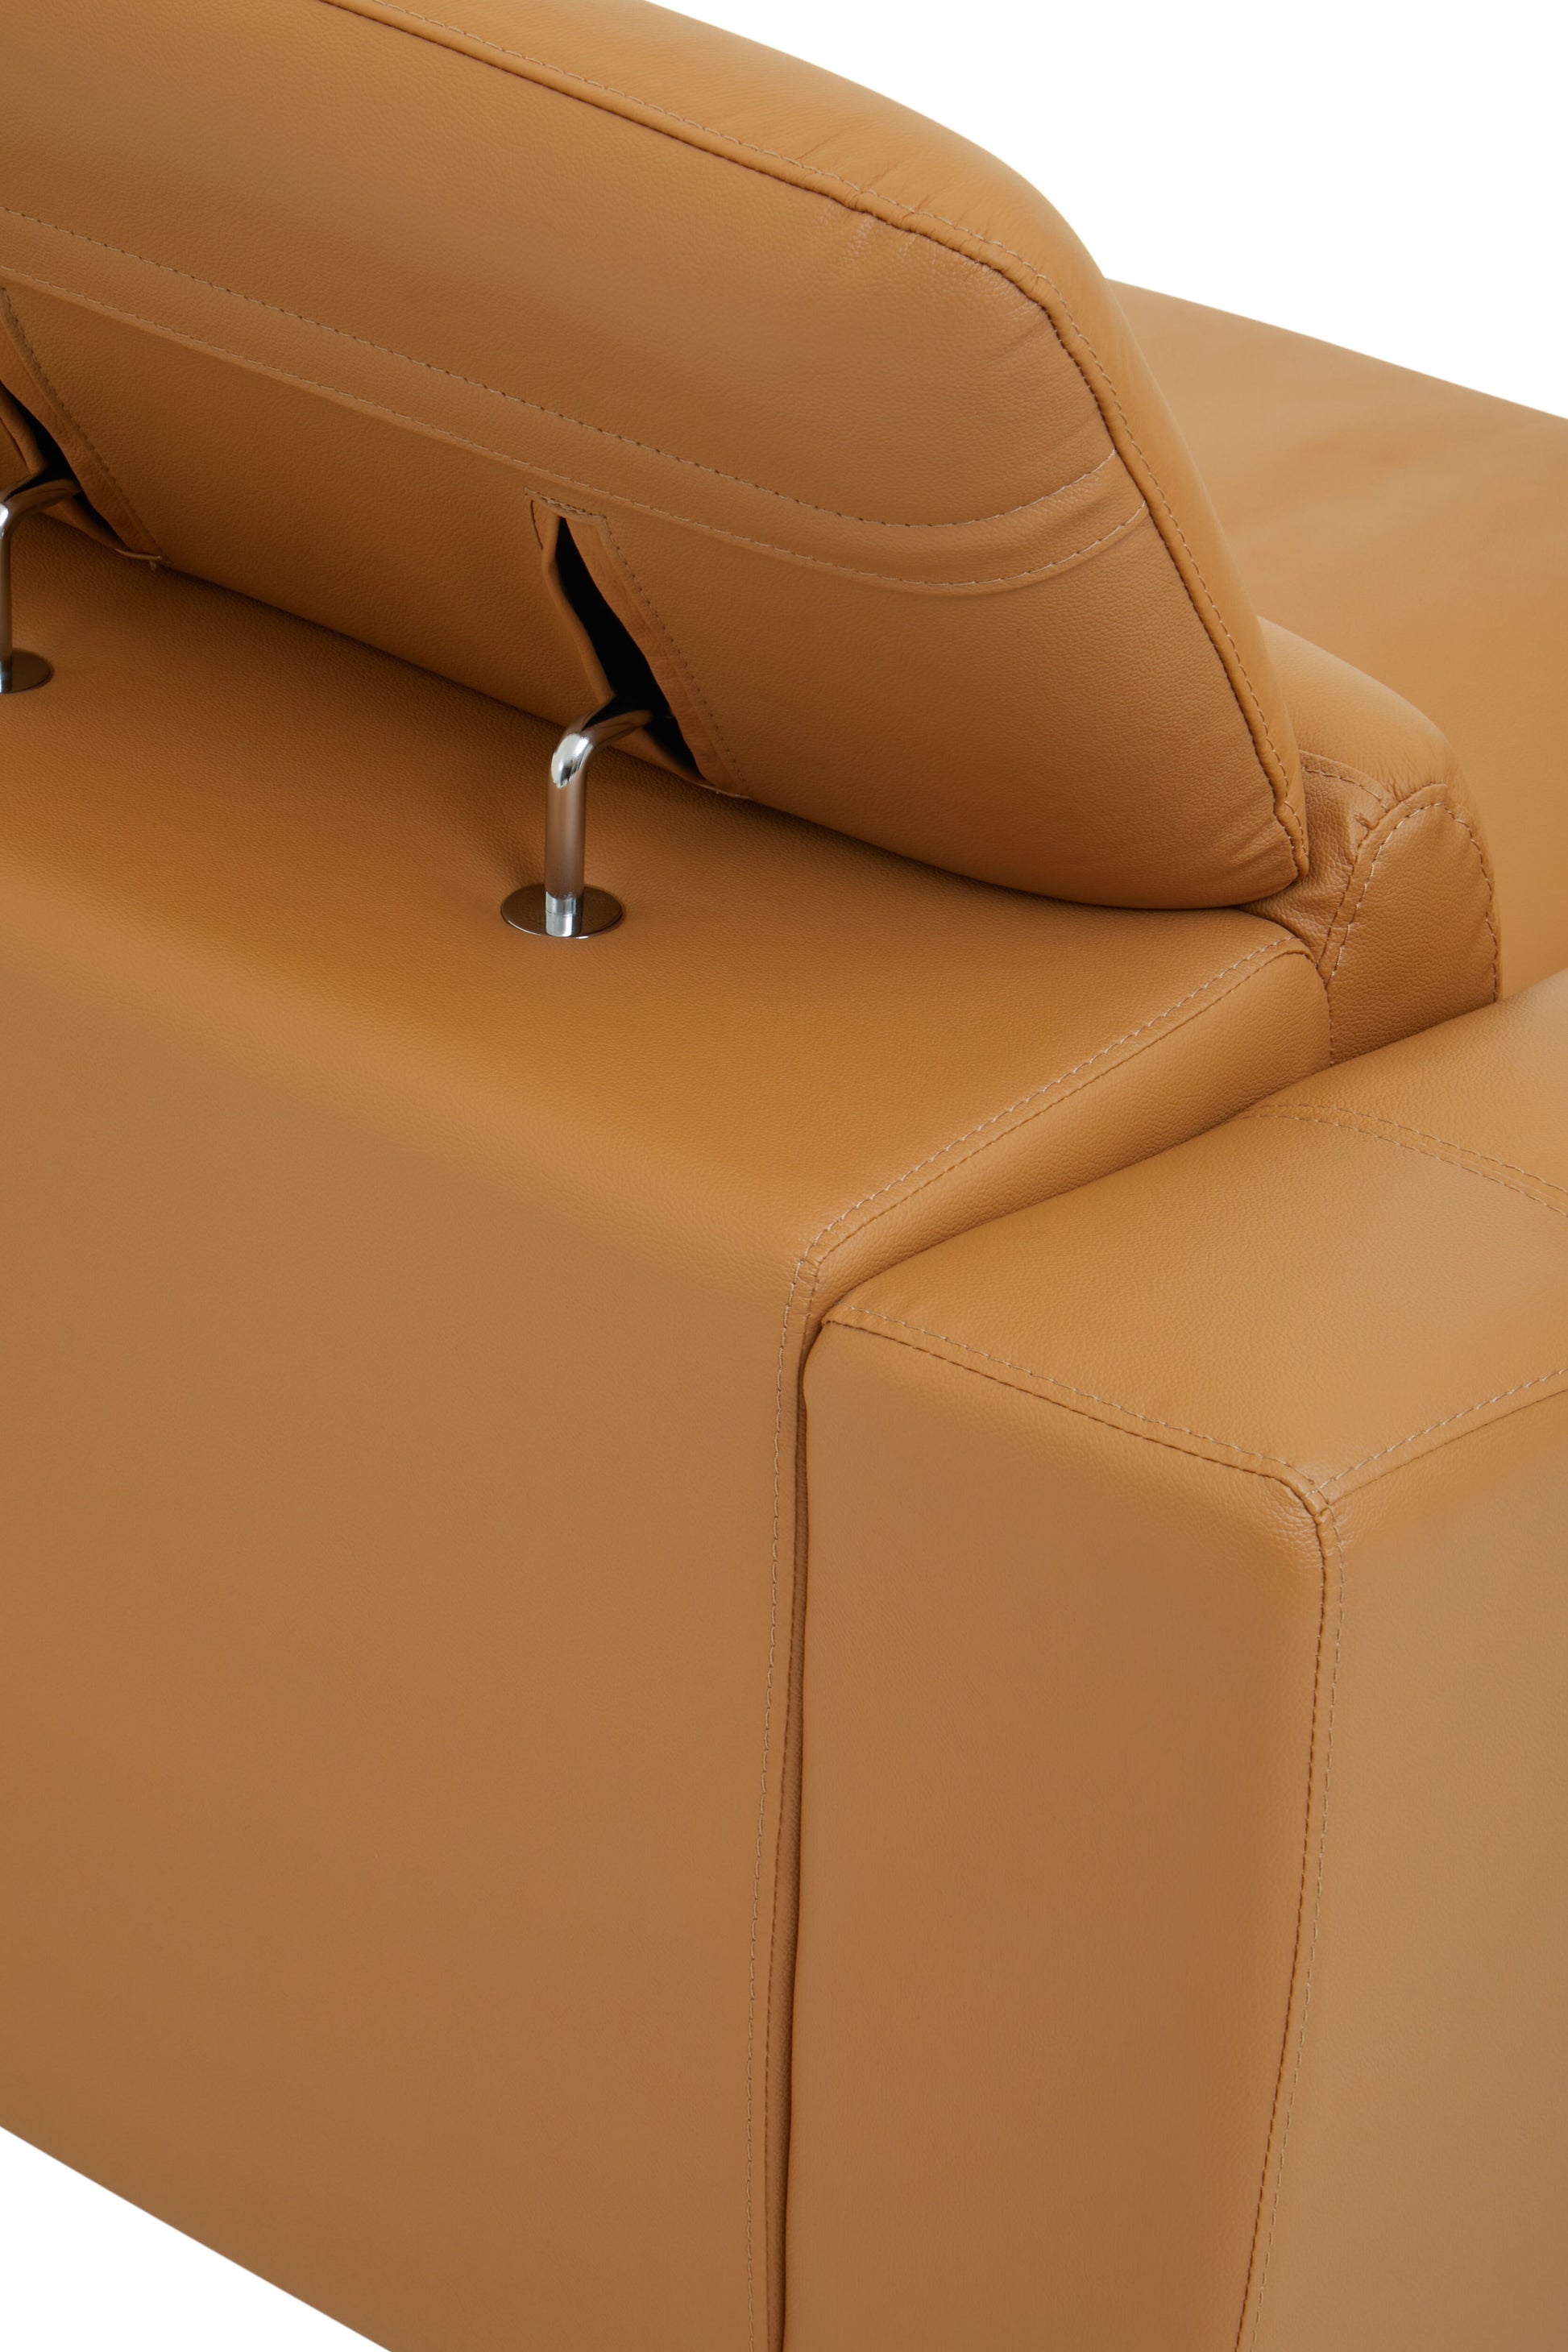 Padua 2 Seat Leather Sofa - NIXO Furniture.com